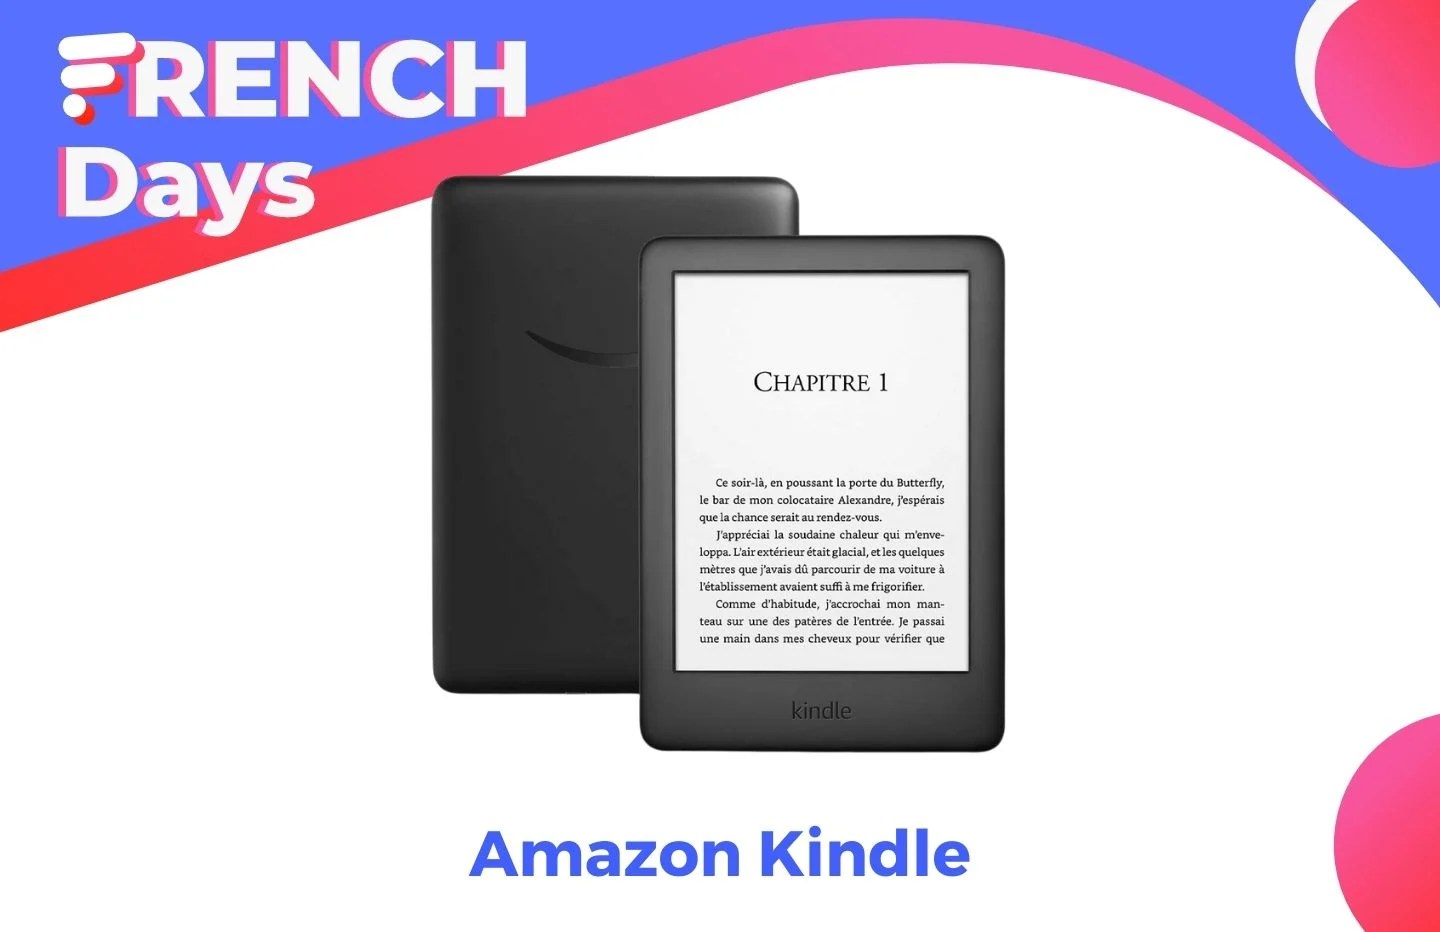 La liseuse la plus célèbre d’Amazon voit son prix chuter pendant les French Days